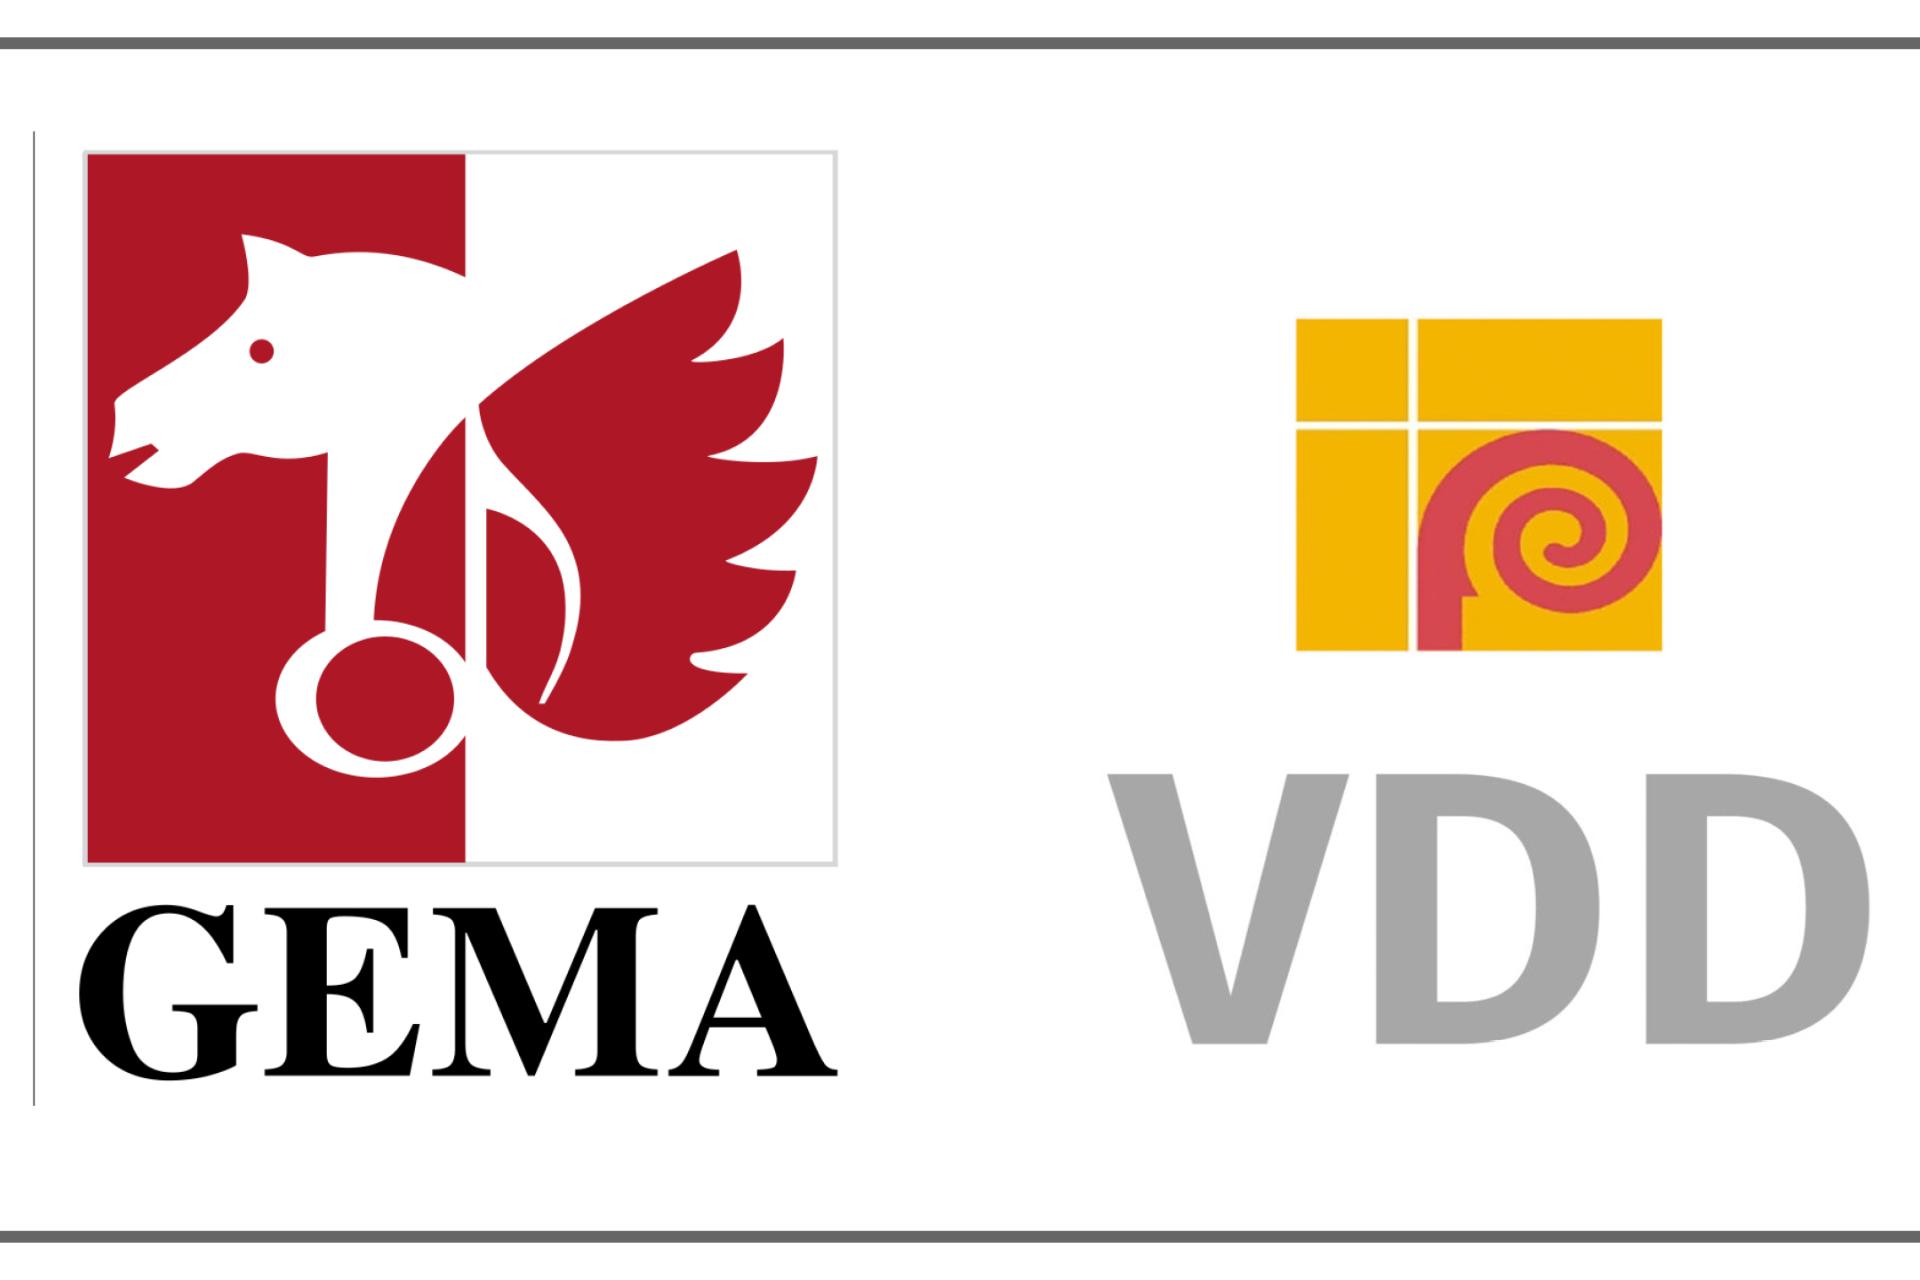 Logo GEMA VDD_1920x10180 (c) Bistum Mainz